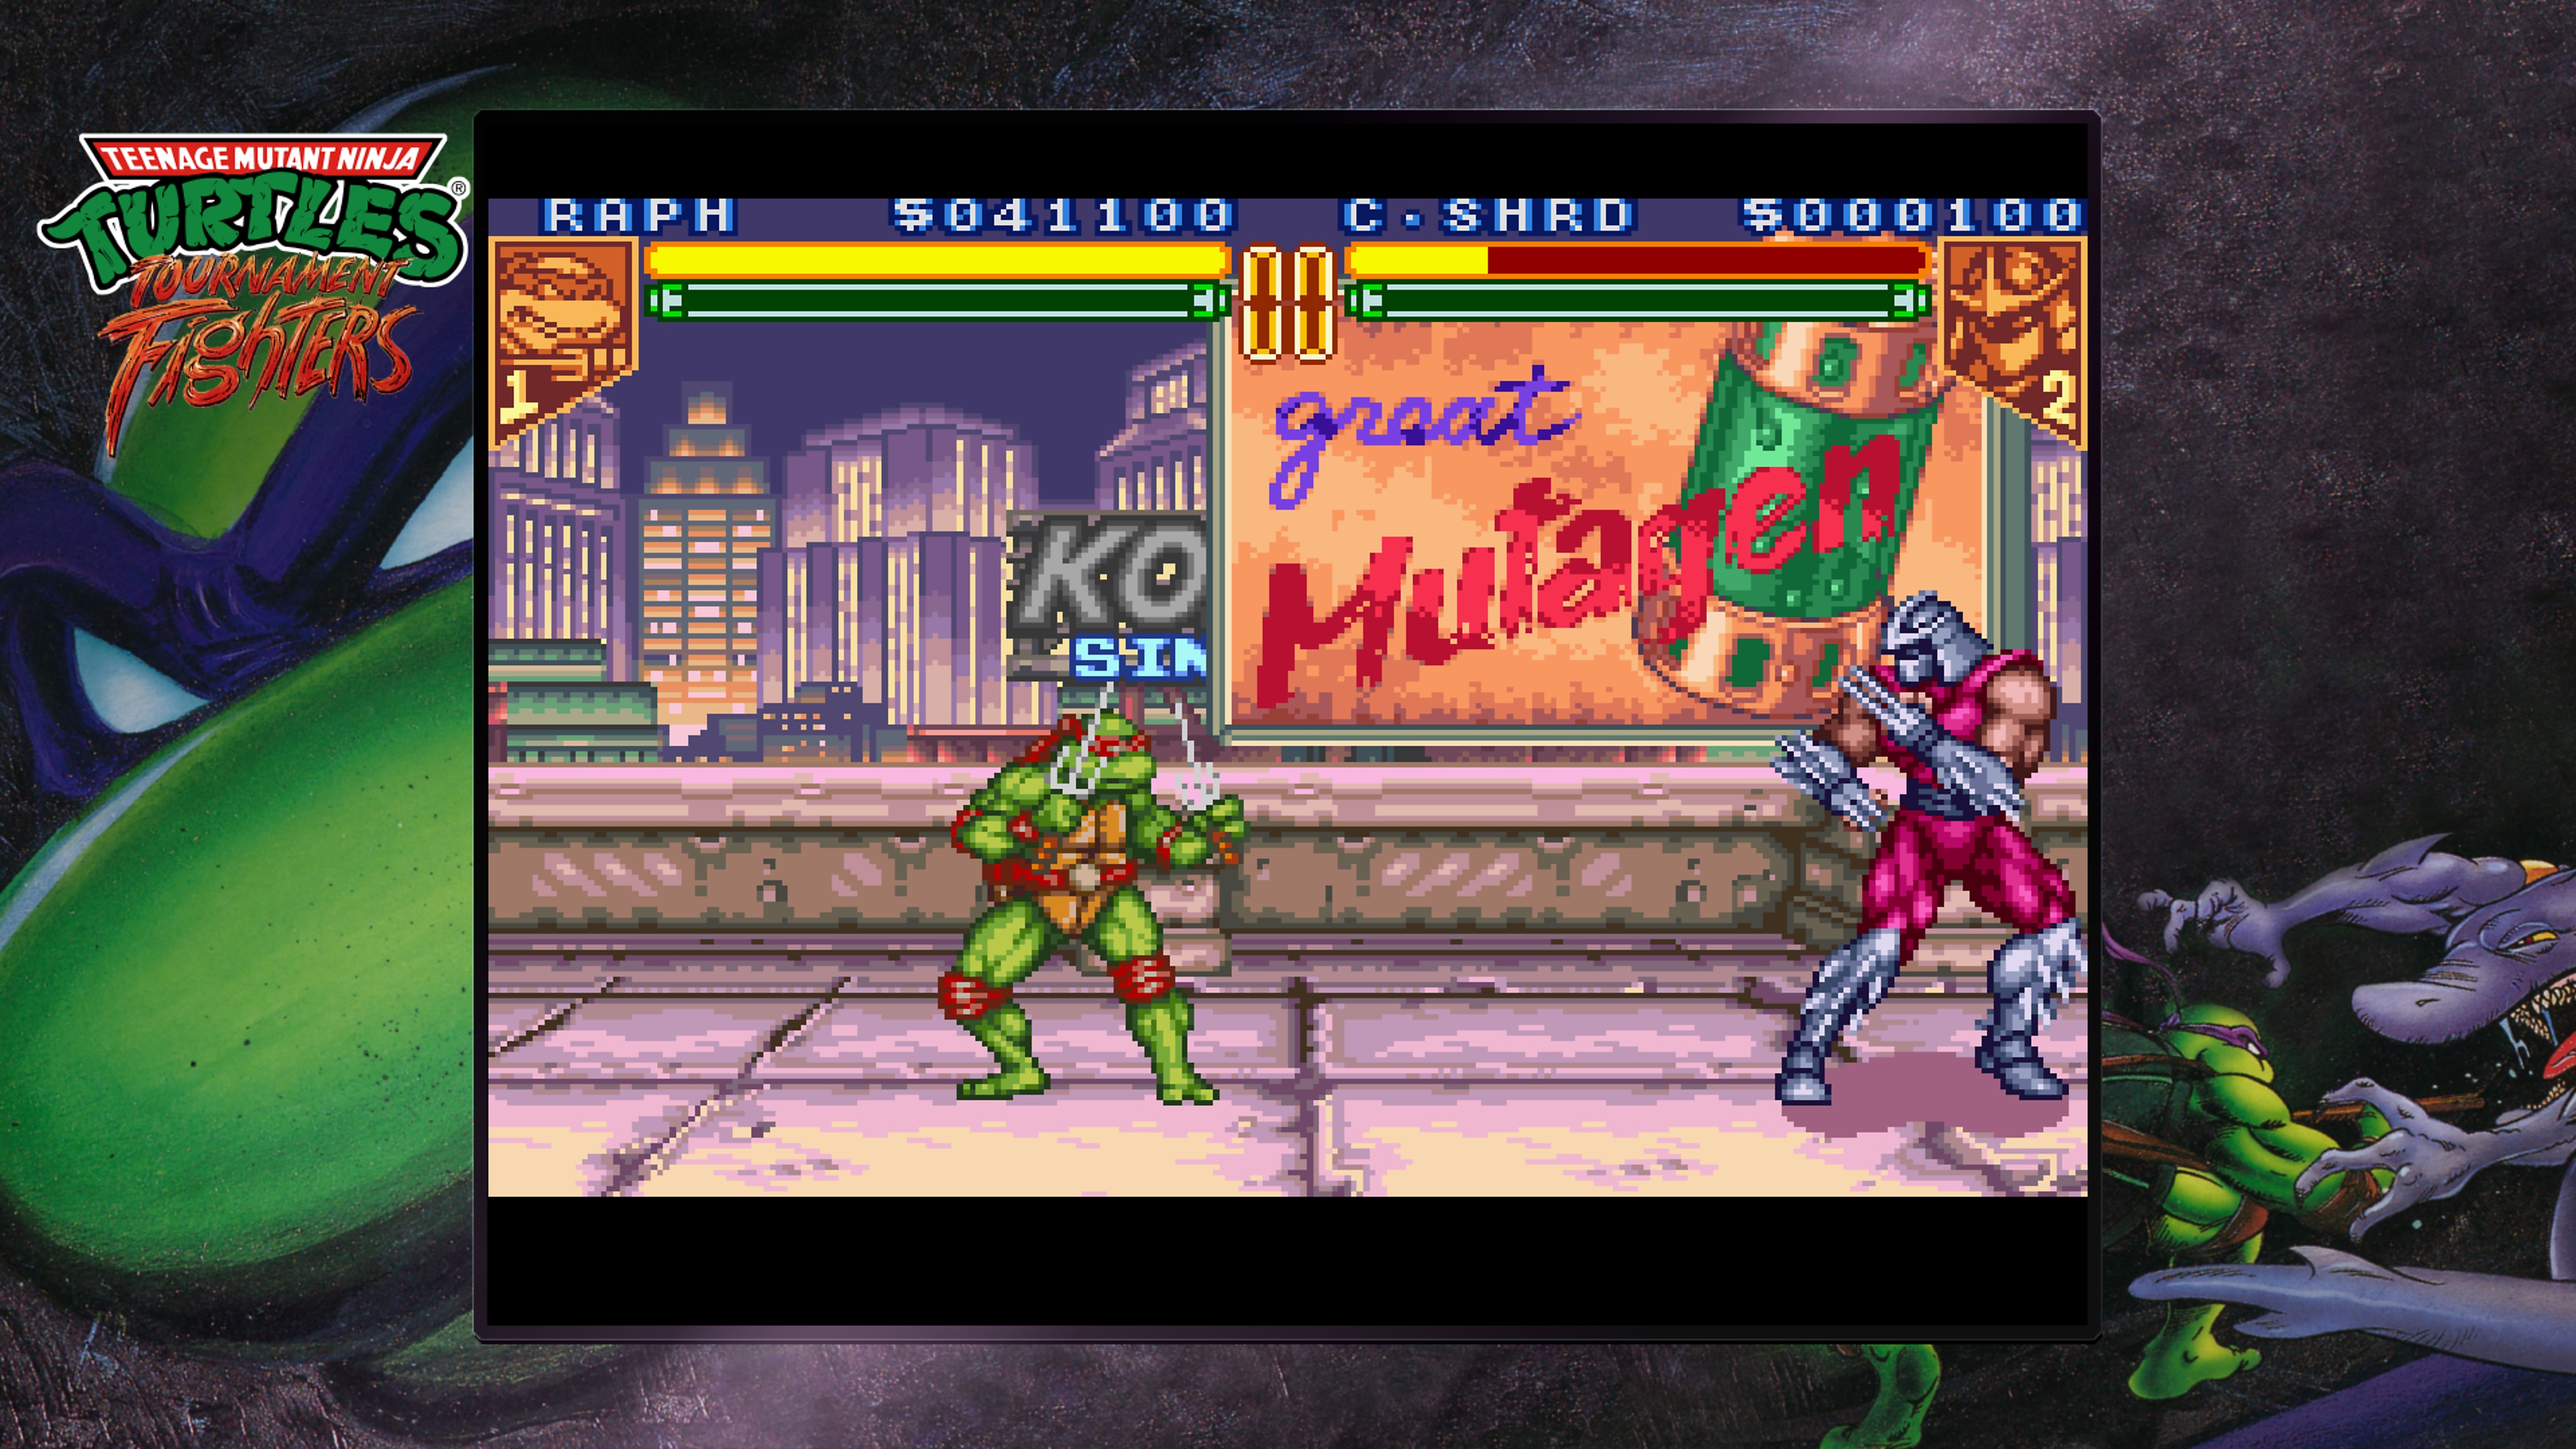 لقطة شاشة من Teenage Mutant Ninja Turtles Collection - Tournament Fighters تظهر رافاييل وهو يقاتل شريدر على أحد الأسطح